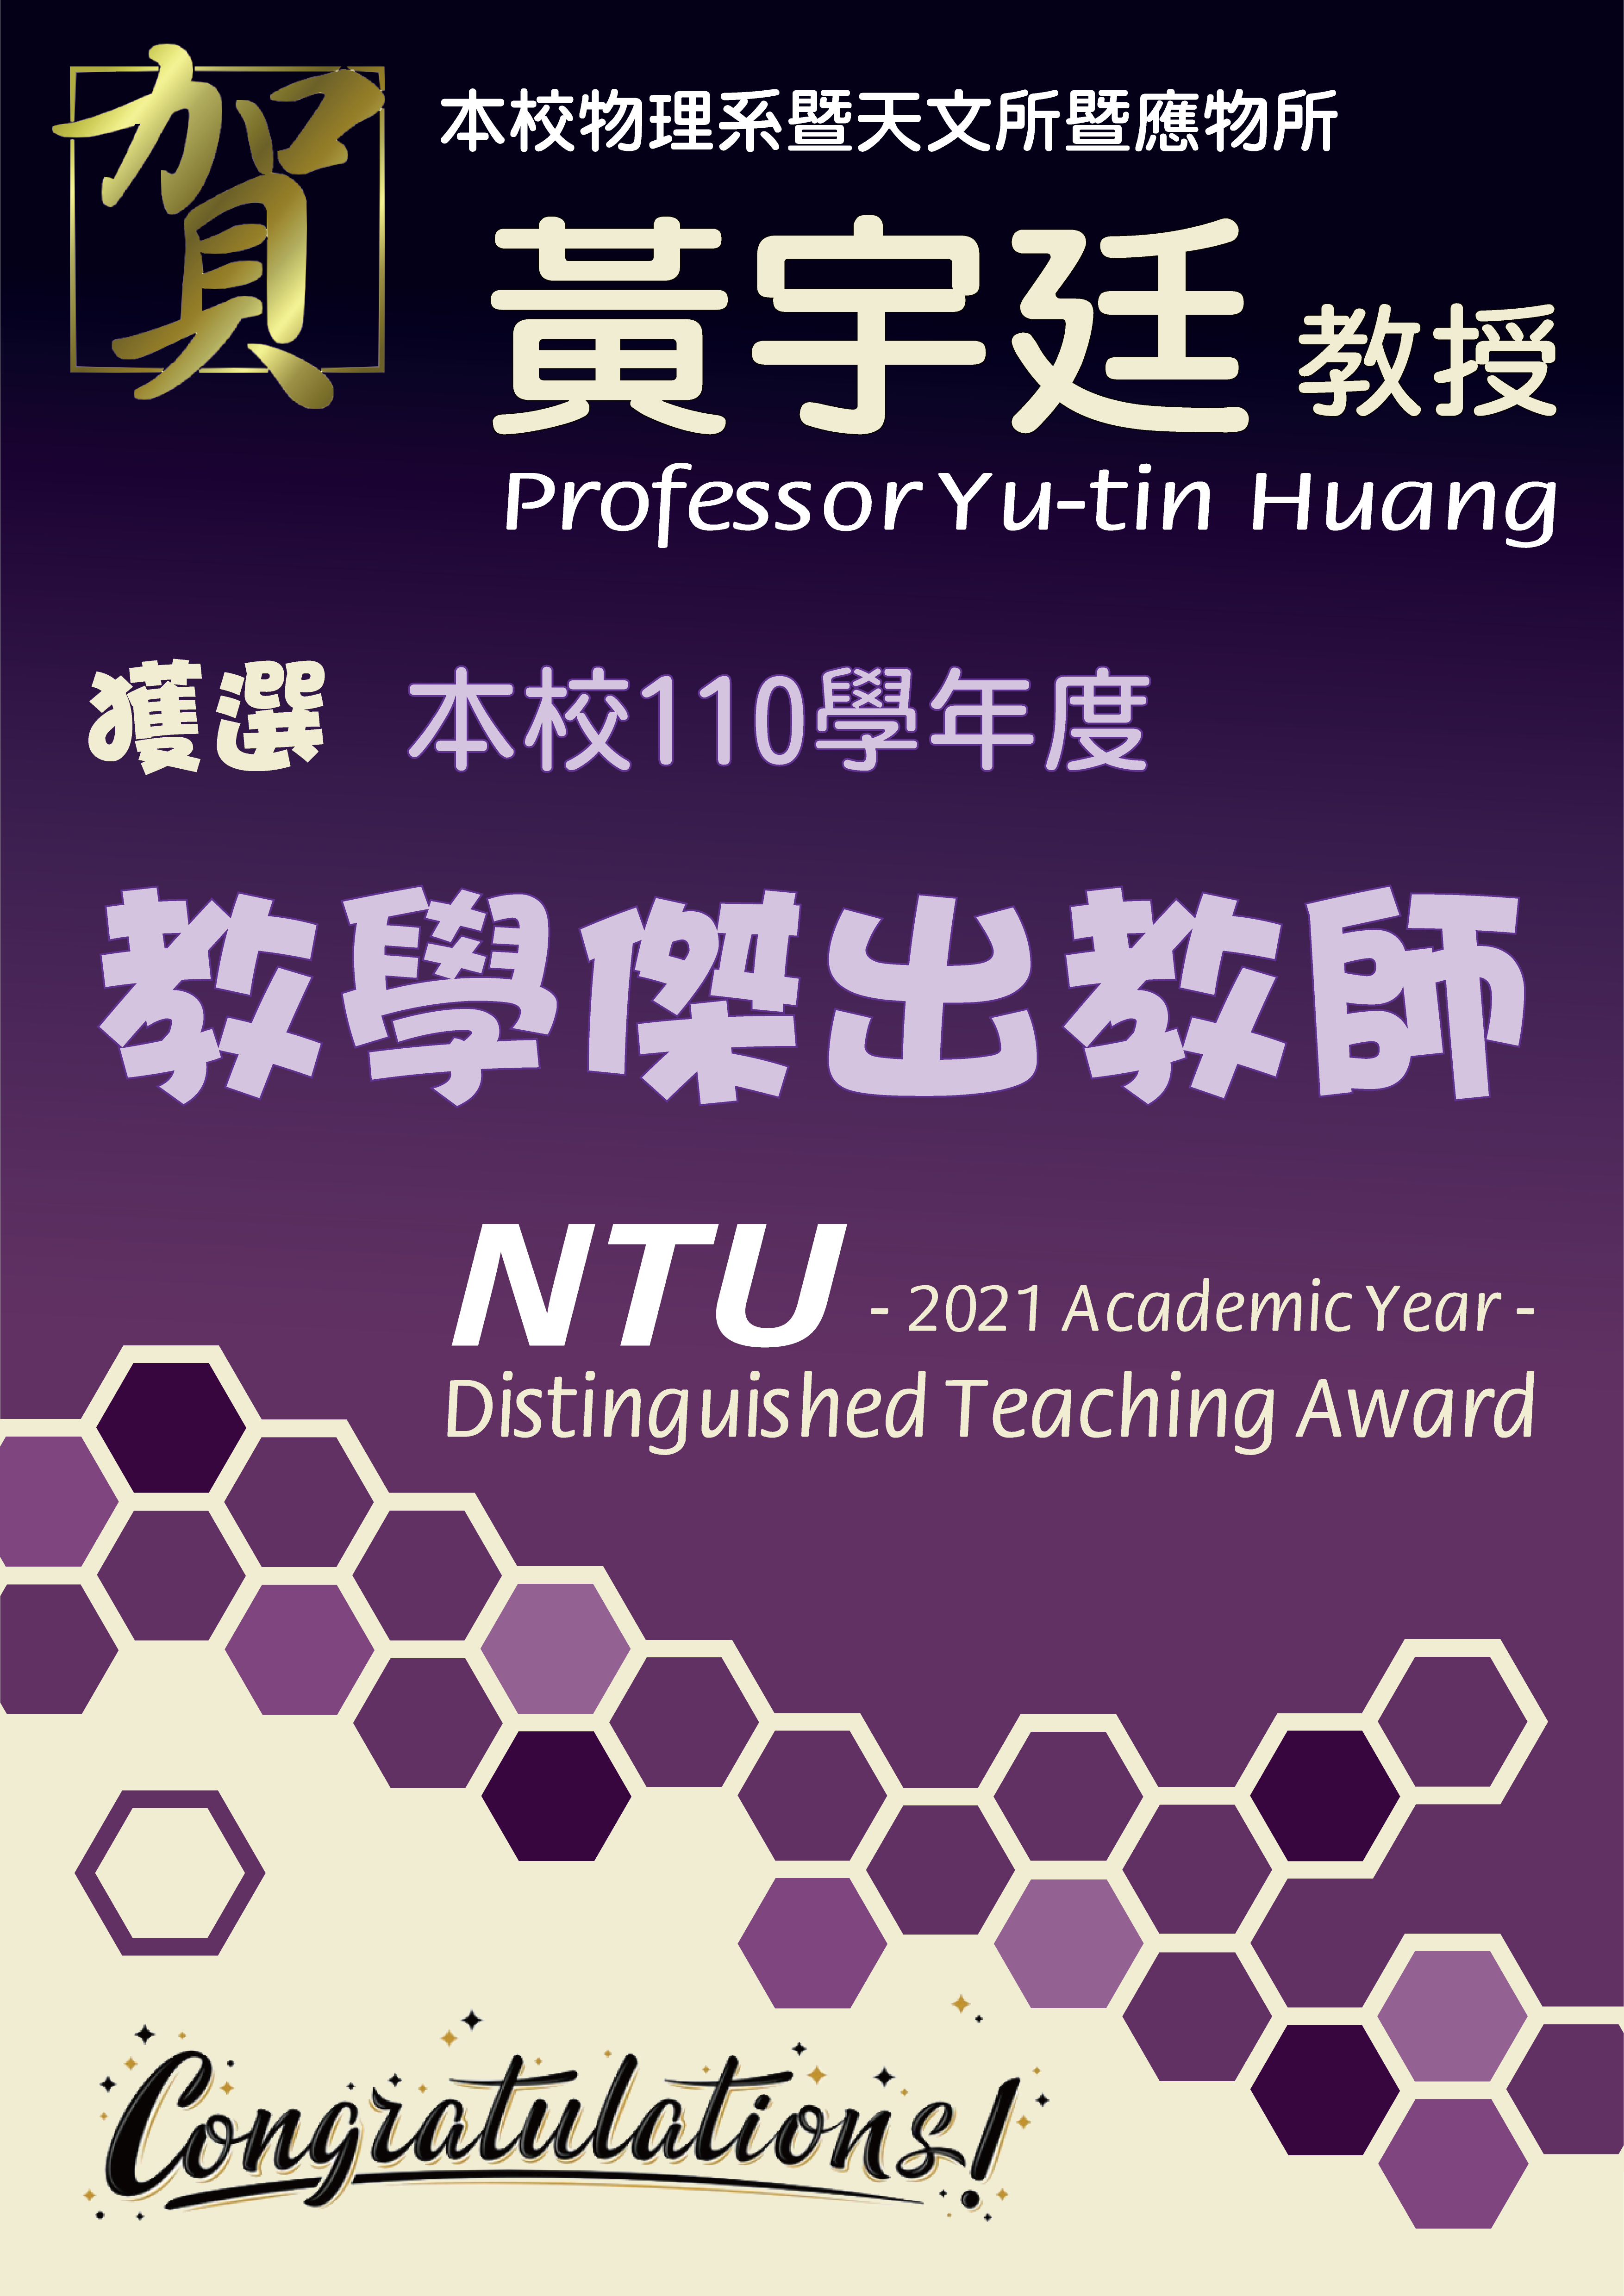 《賀》本系 黃宇廷 教授 Prof. Yu-tin Huang 獲選 110學年度《教學傑出教師》(NTU Distinguished Teaching Award)